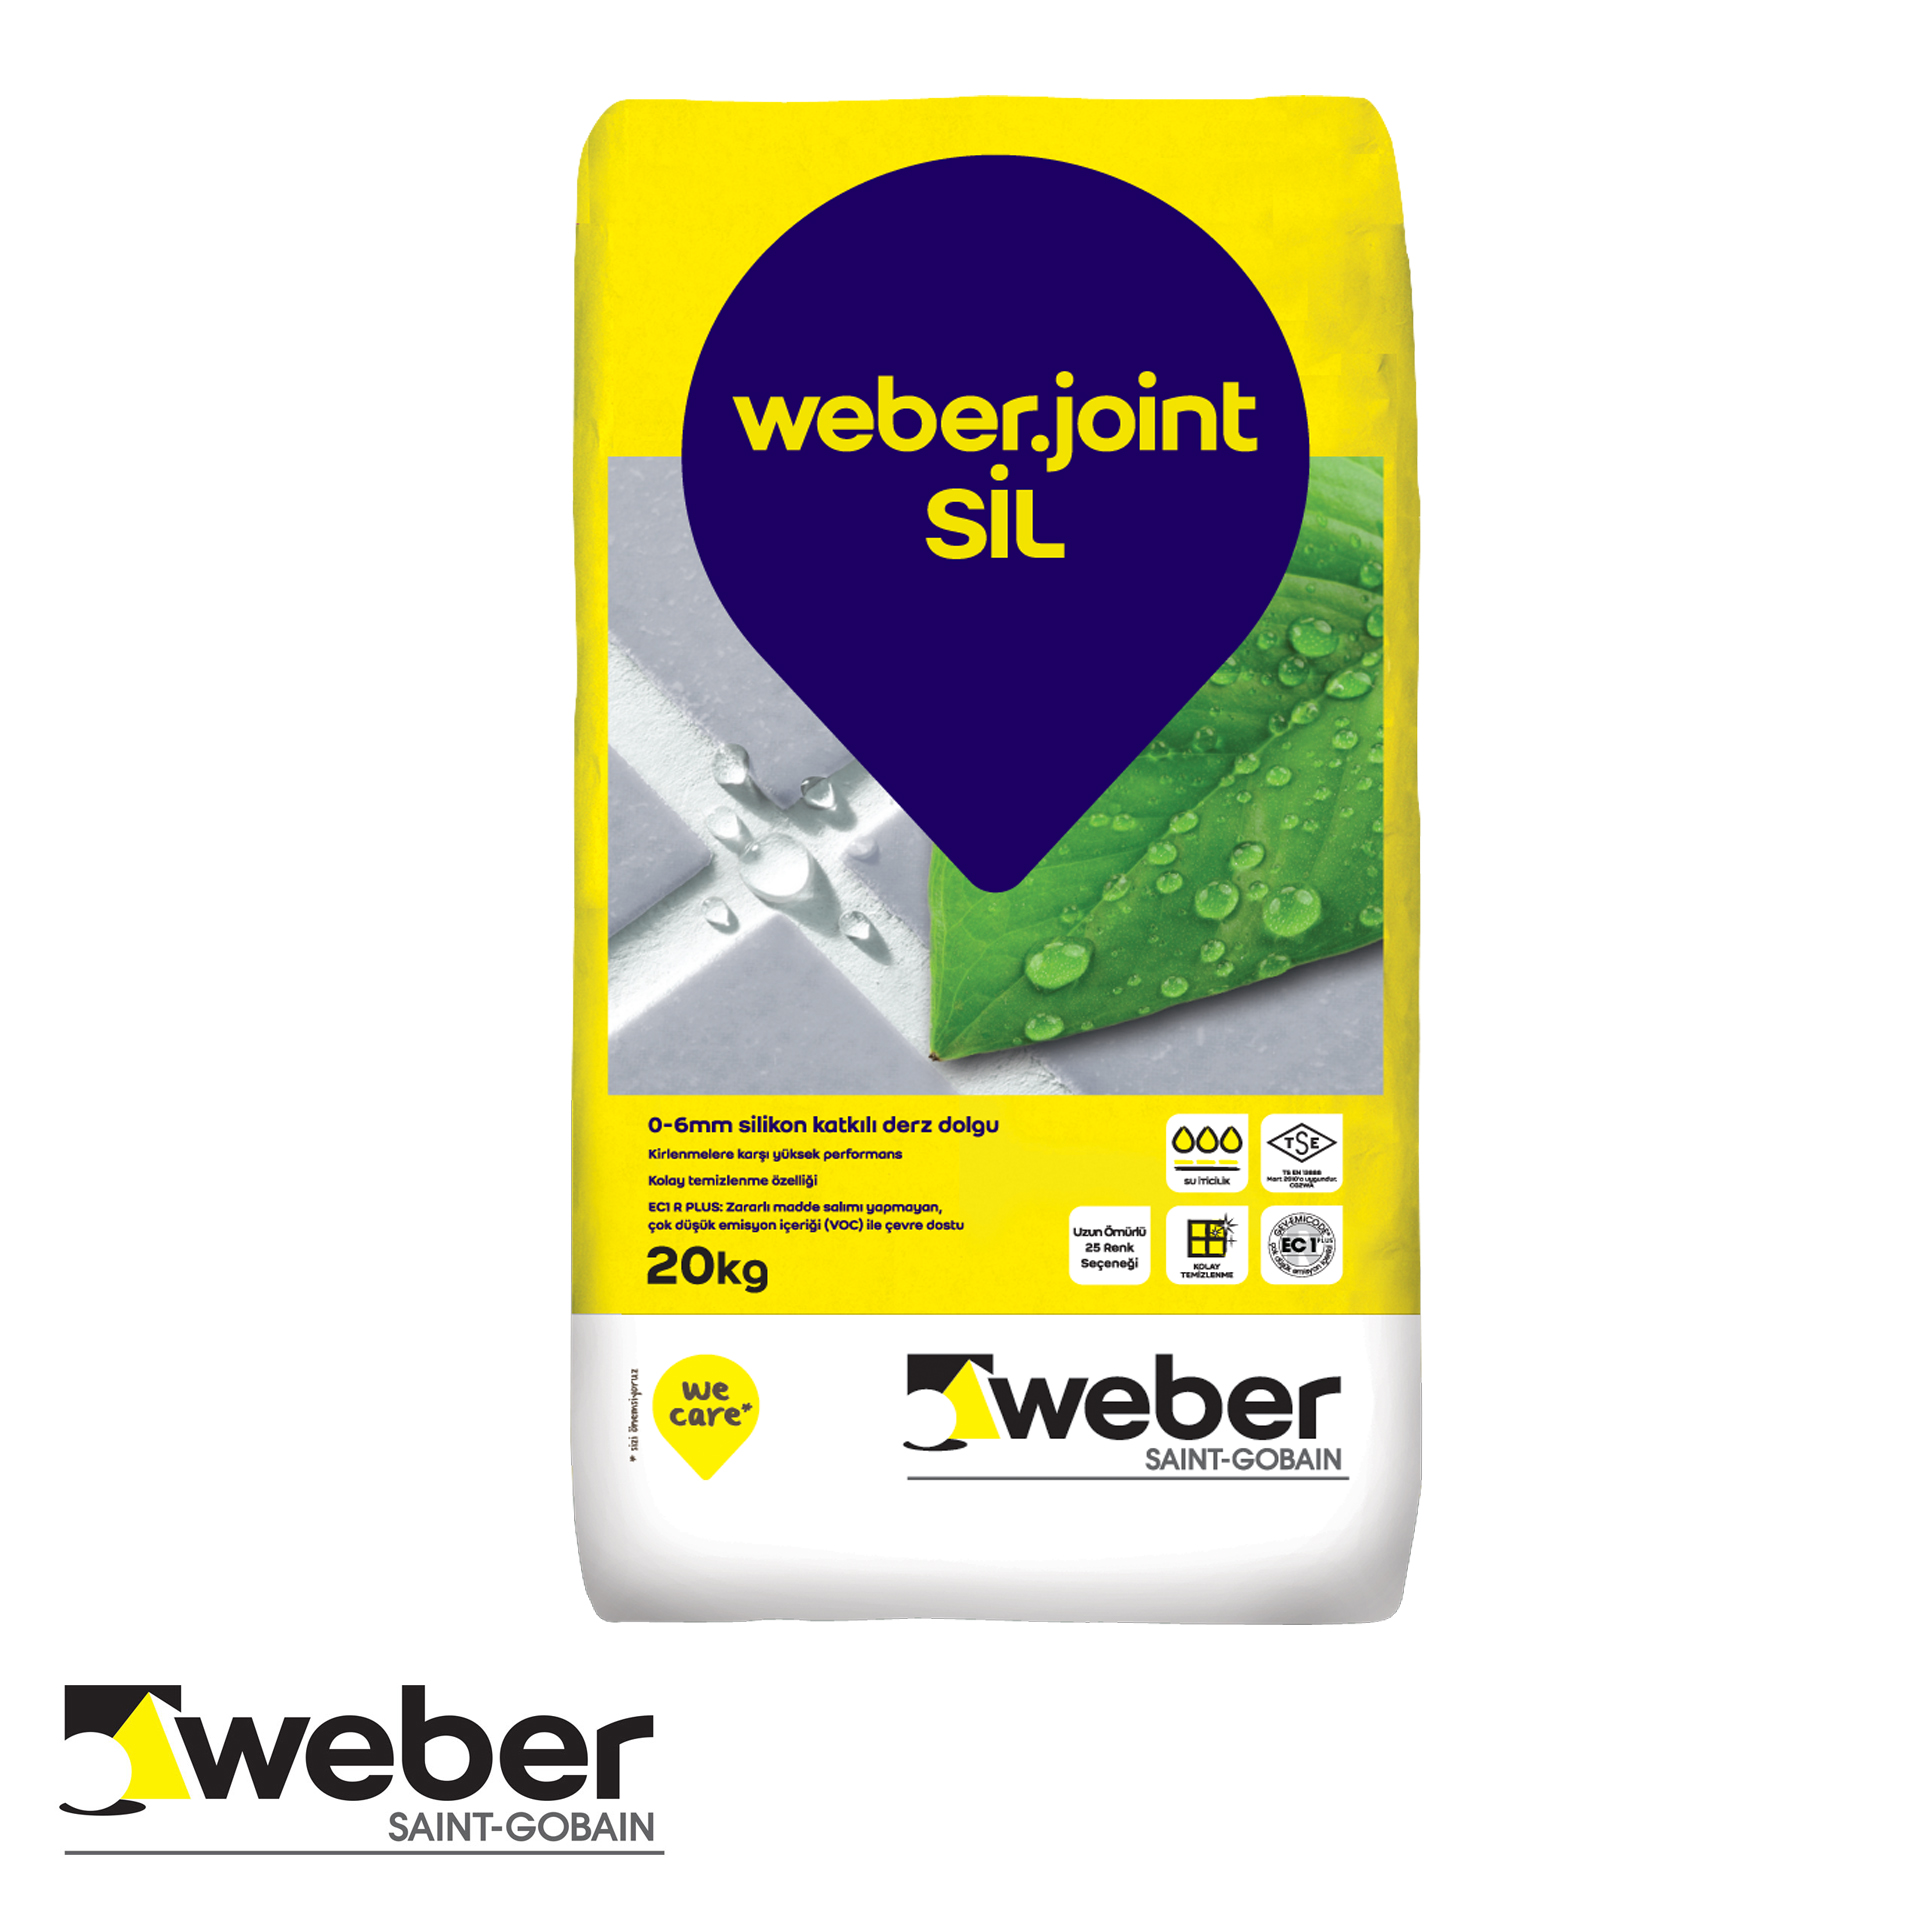 Weber Joint Sil 20KG